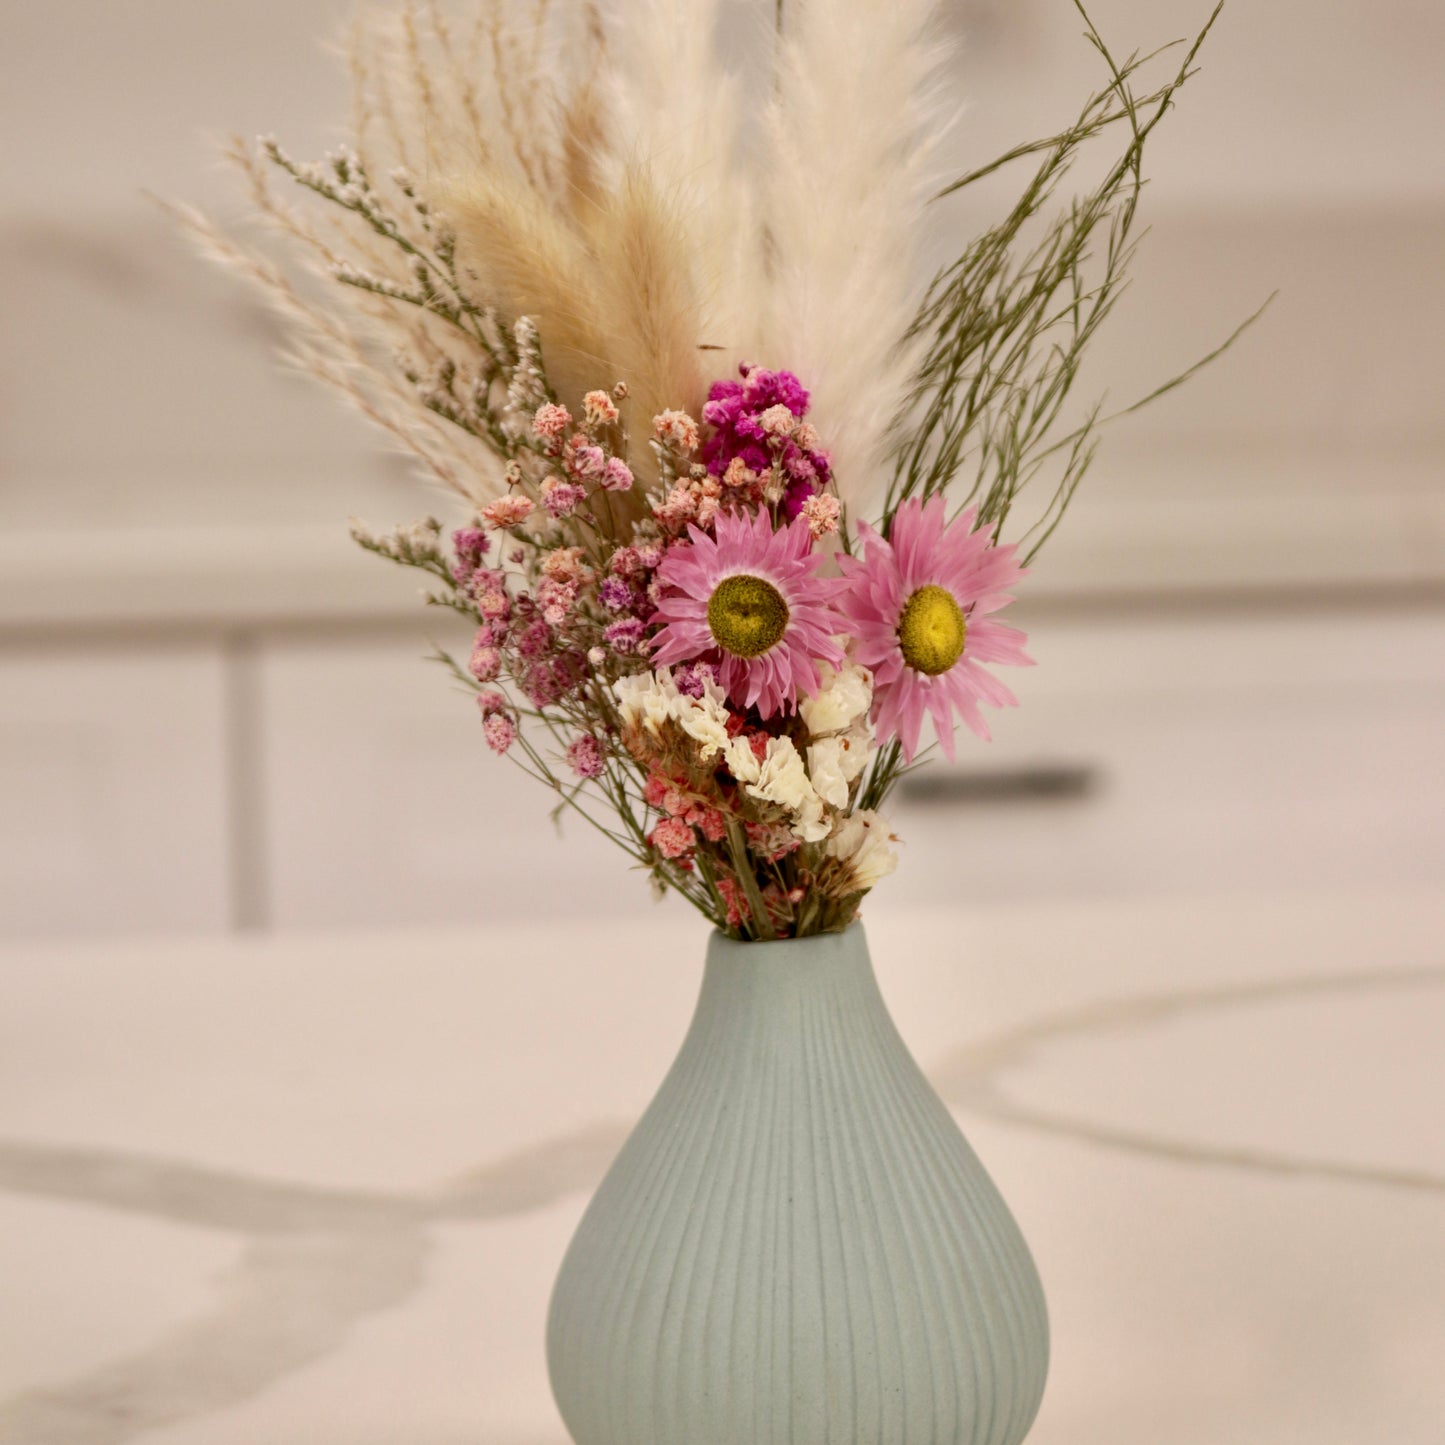 Mini Dried Floral Arrangements